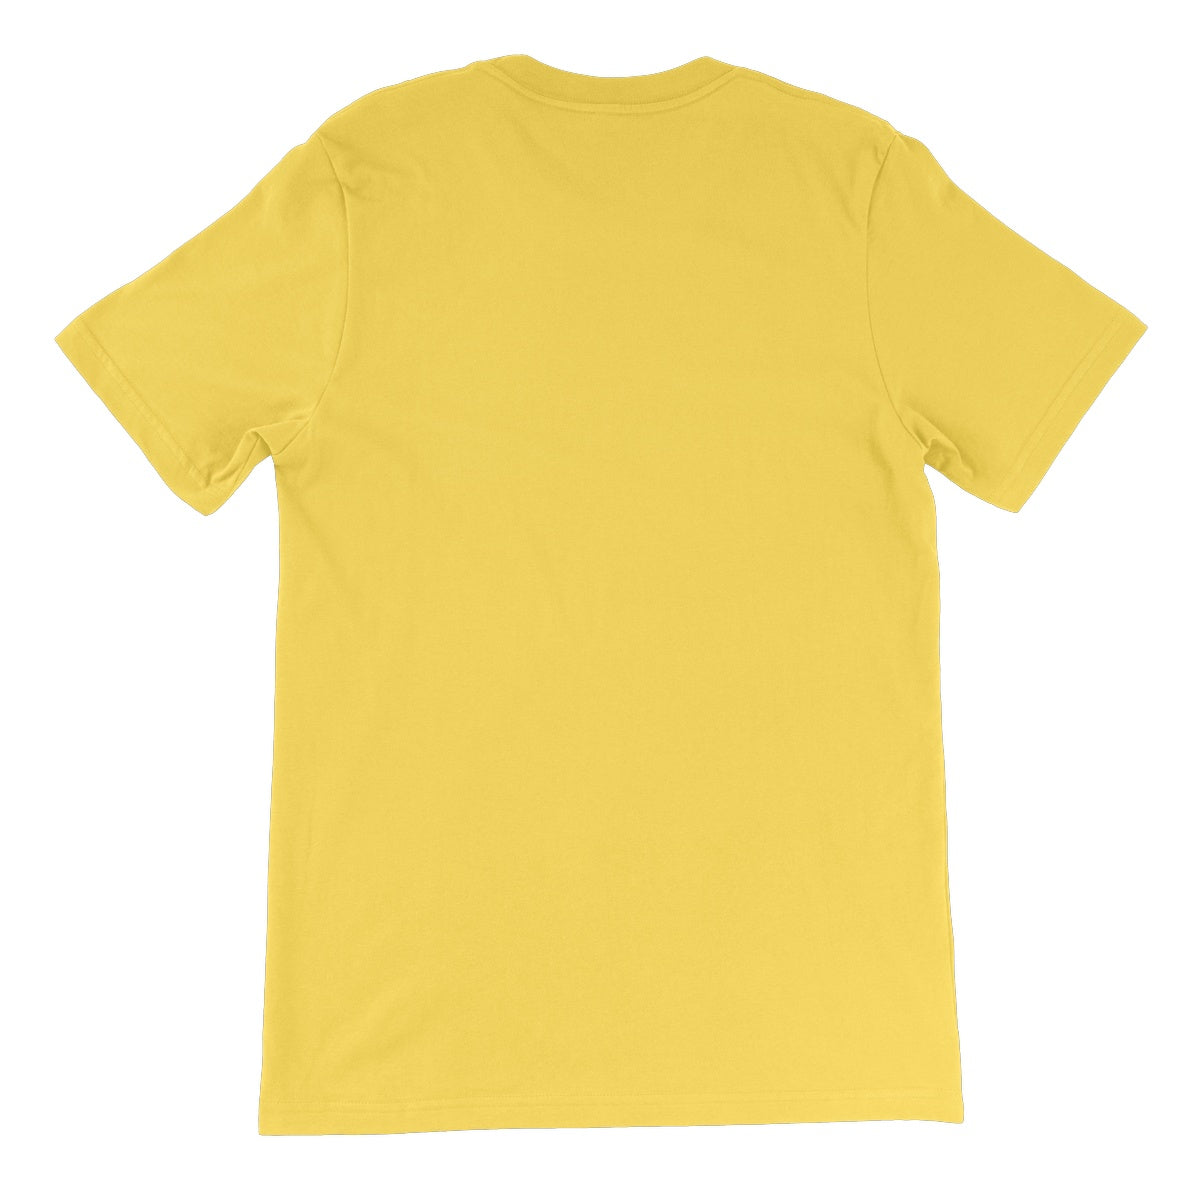 For The Children CxE Unisex Short Sleeve T-Shirt